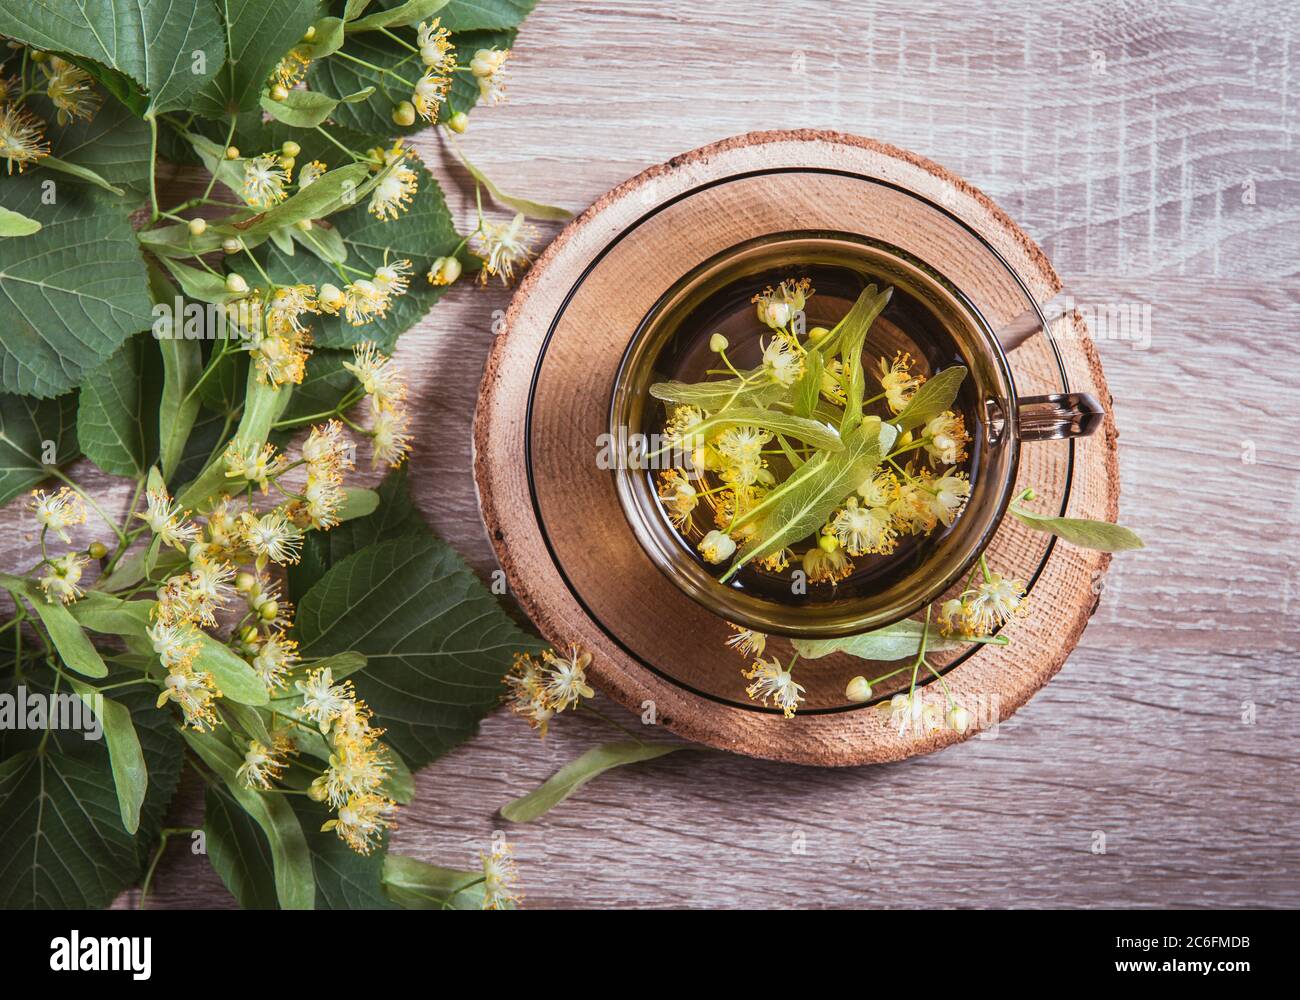 Tilia platyphyllos connu comme thé à base de plantes de linden à grands feuilles, fait d'une fleur fraîchement cueillie avec des feuilles d'arbre et des branches avec des fleurs pour la déco Banque D'Images